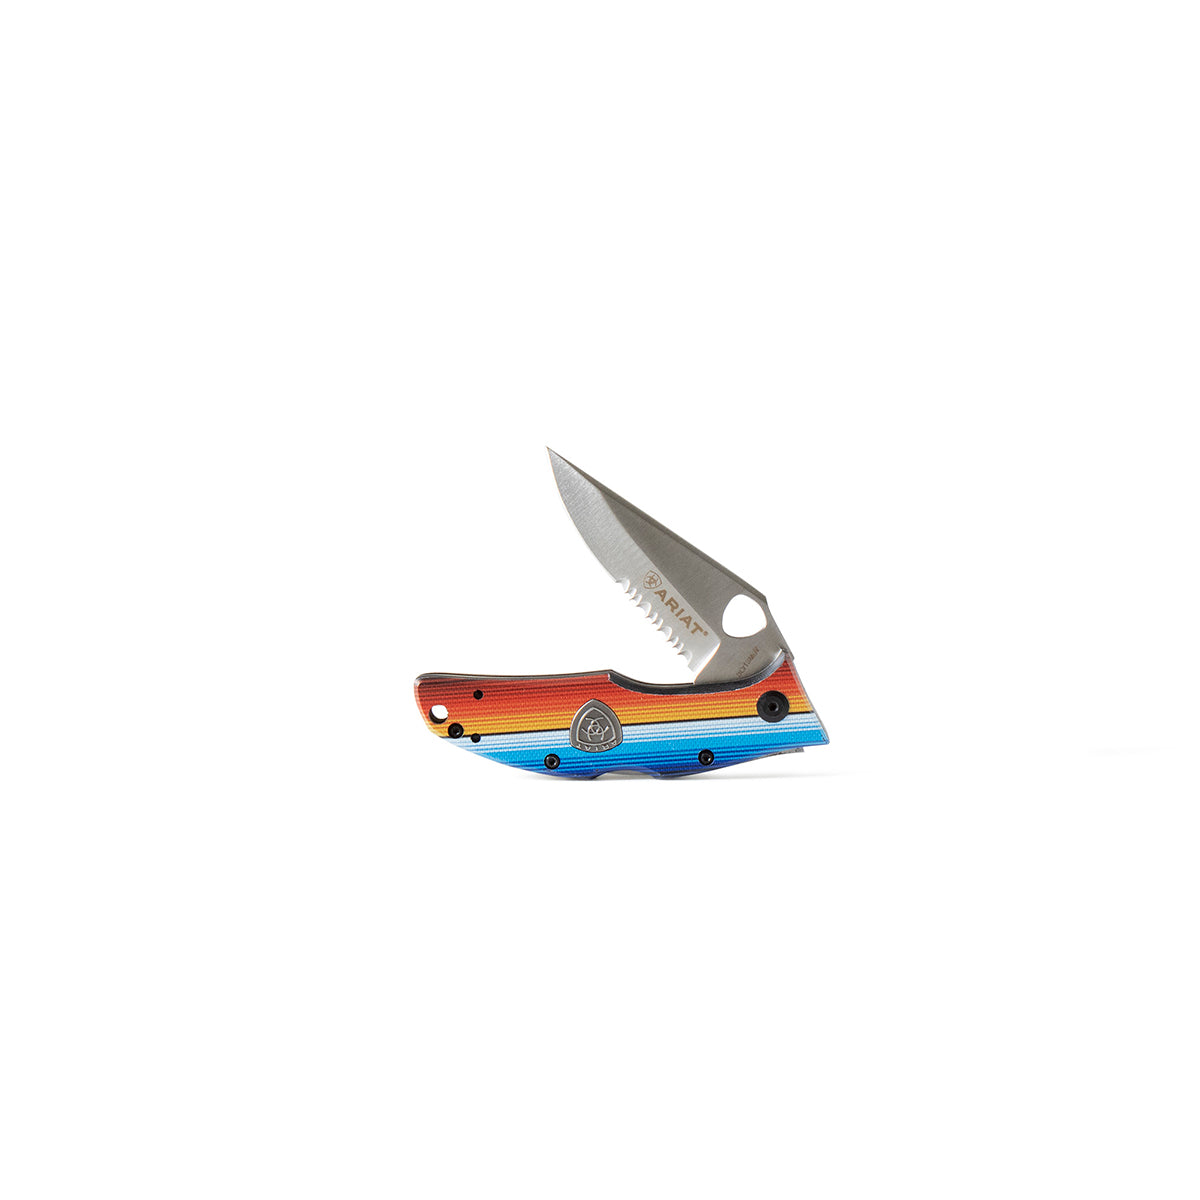 Ariat Serape Small/ Medium 2.5" or 3" Pocket Knife